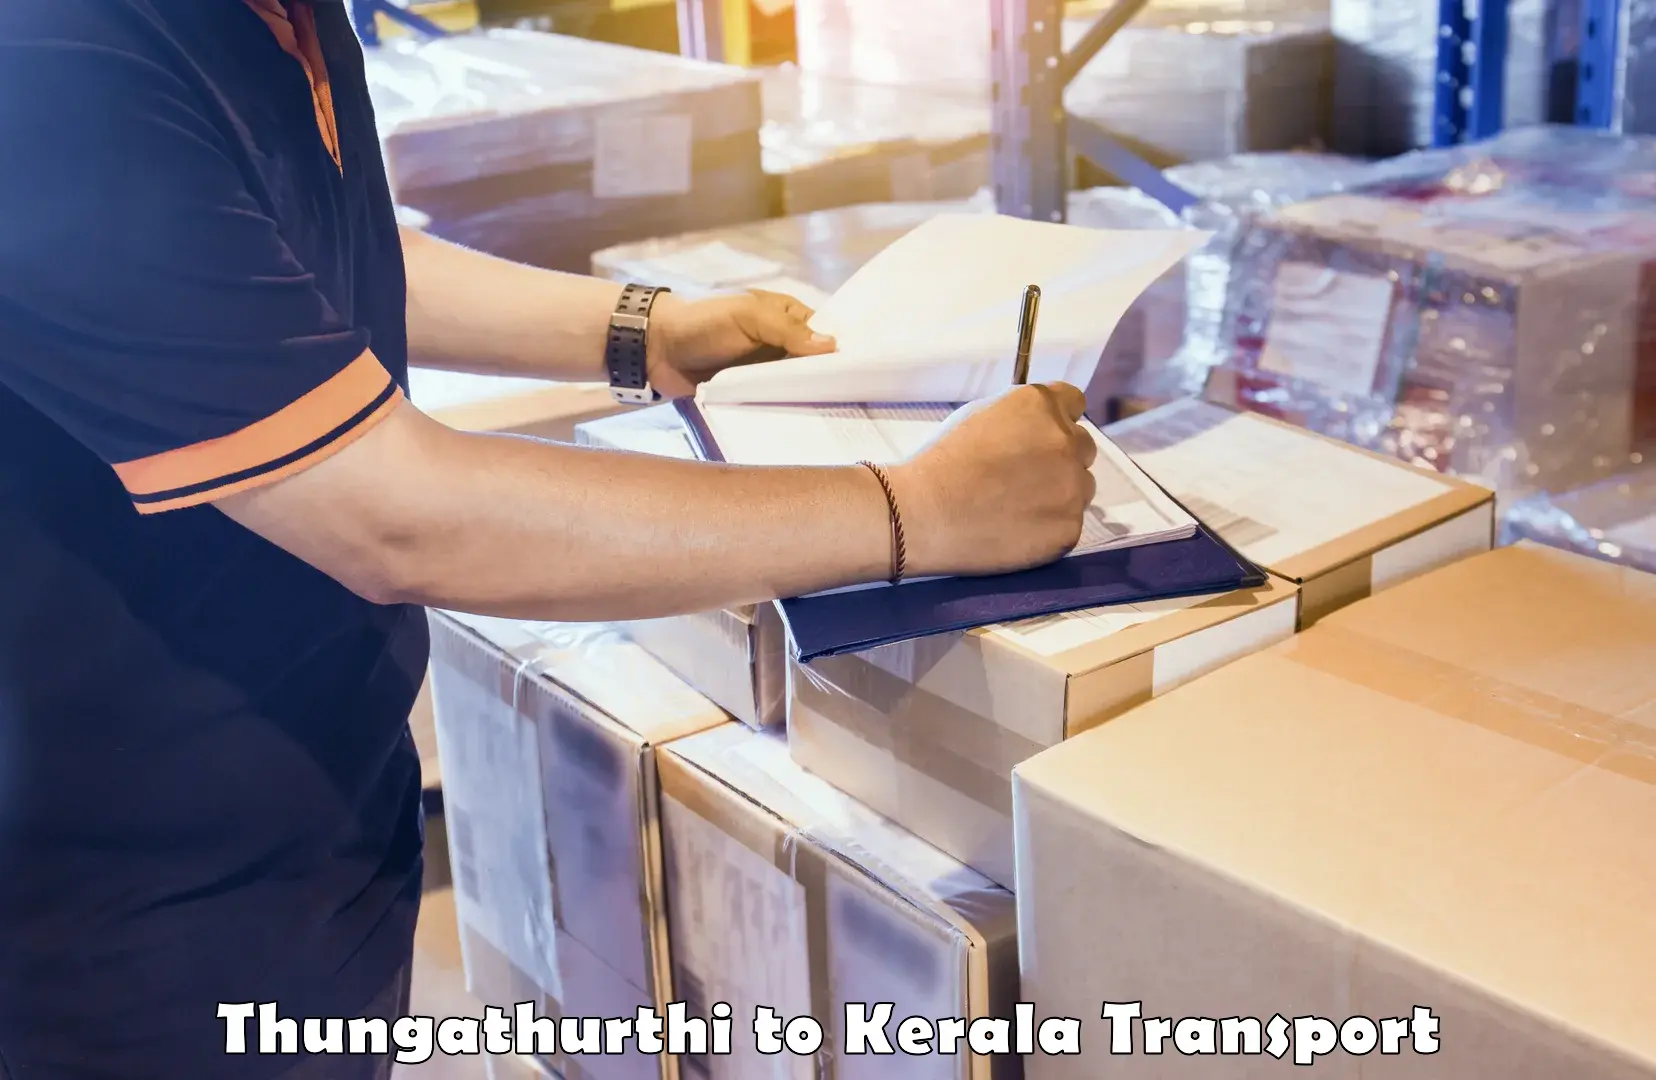 Daily transport service Thungathurthi to Kuttiady